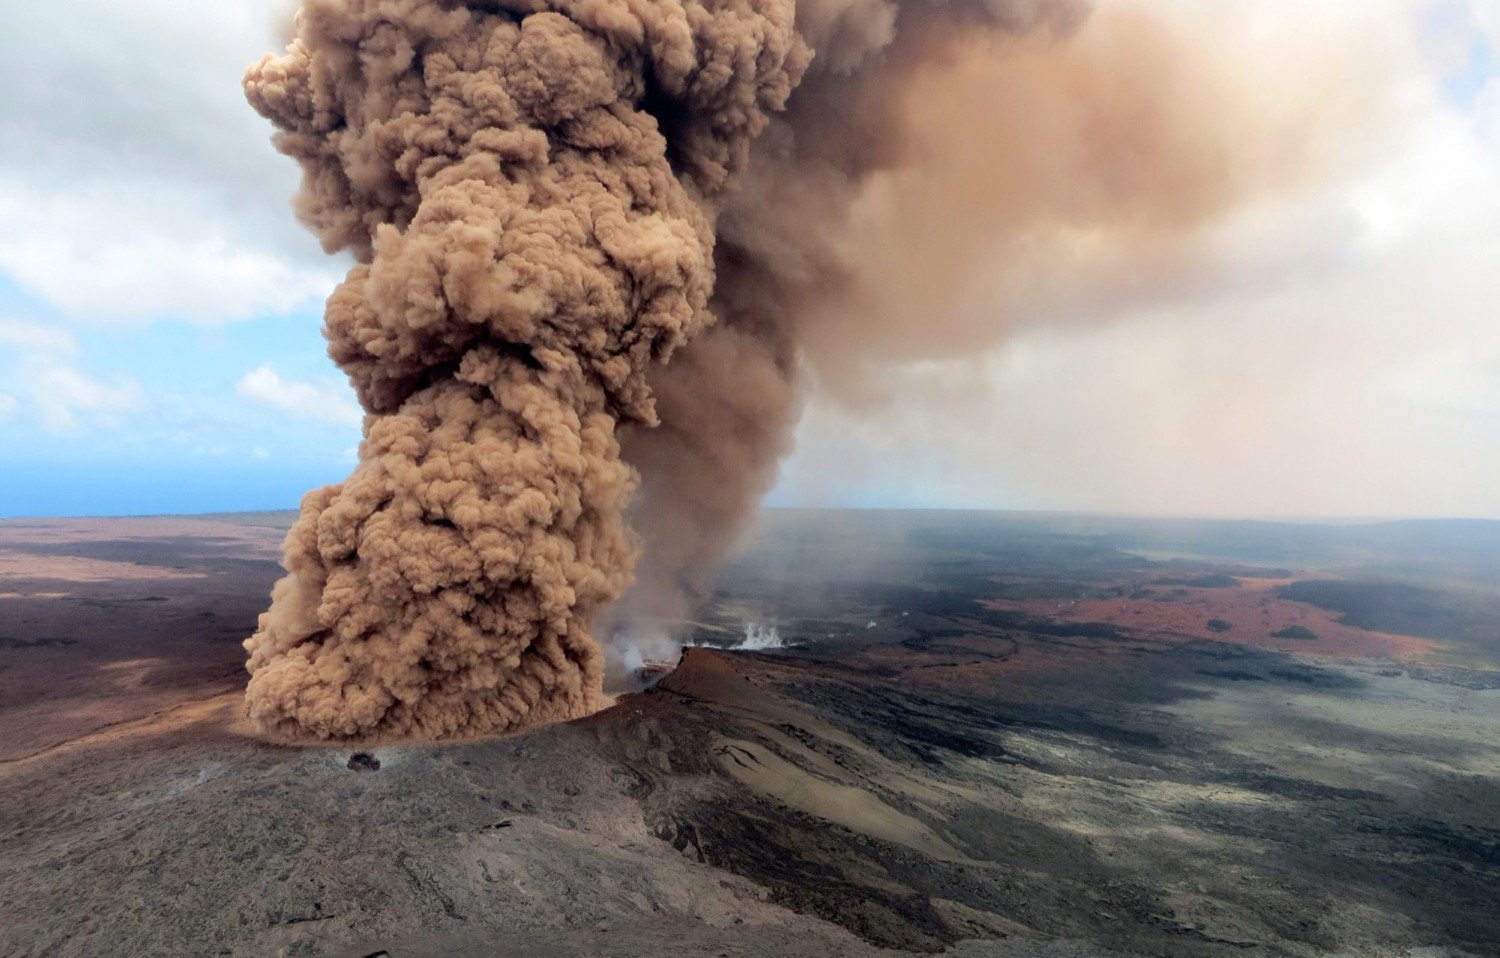 La situazione in Hawaii si deteriora, Kilauea può iniziare a esplodere